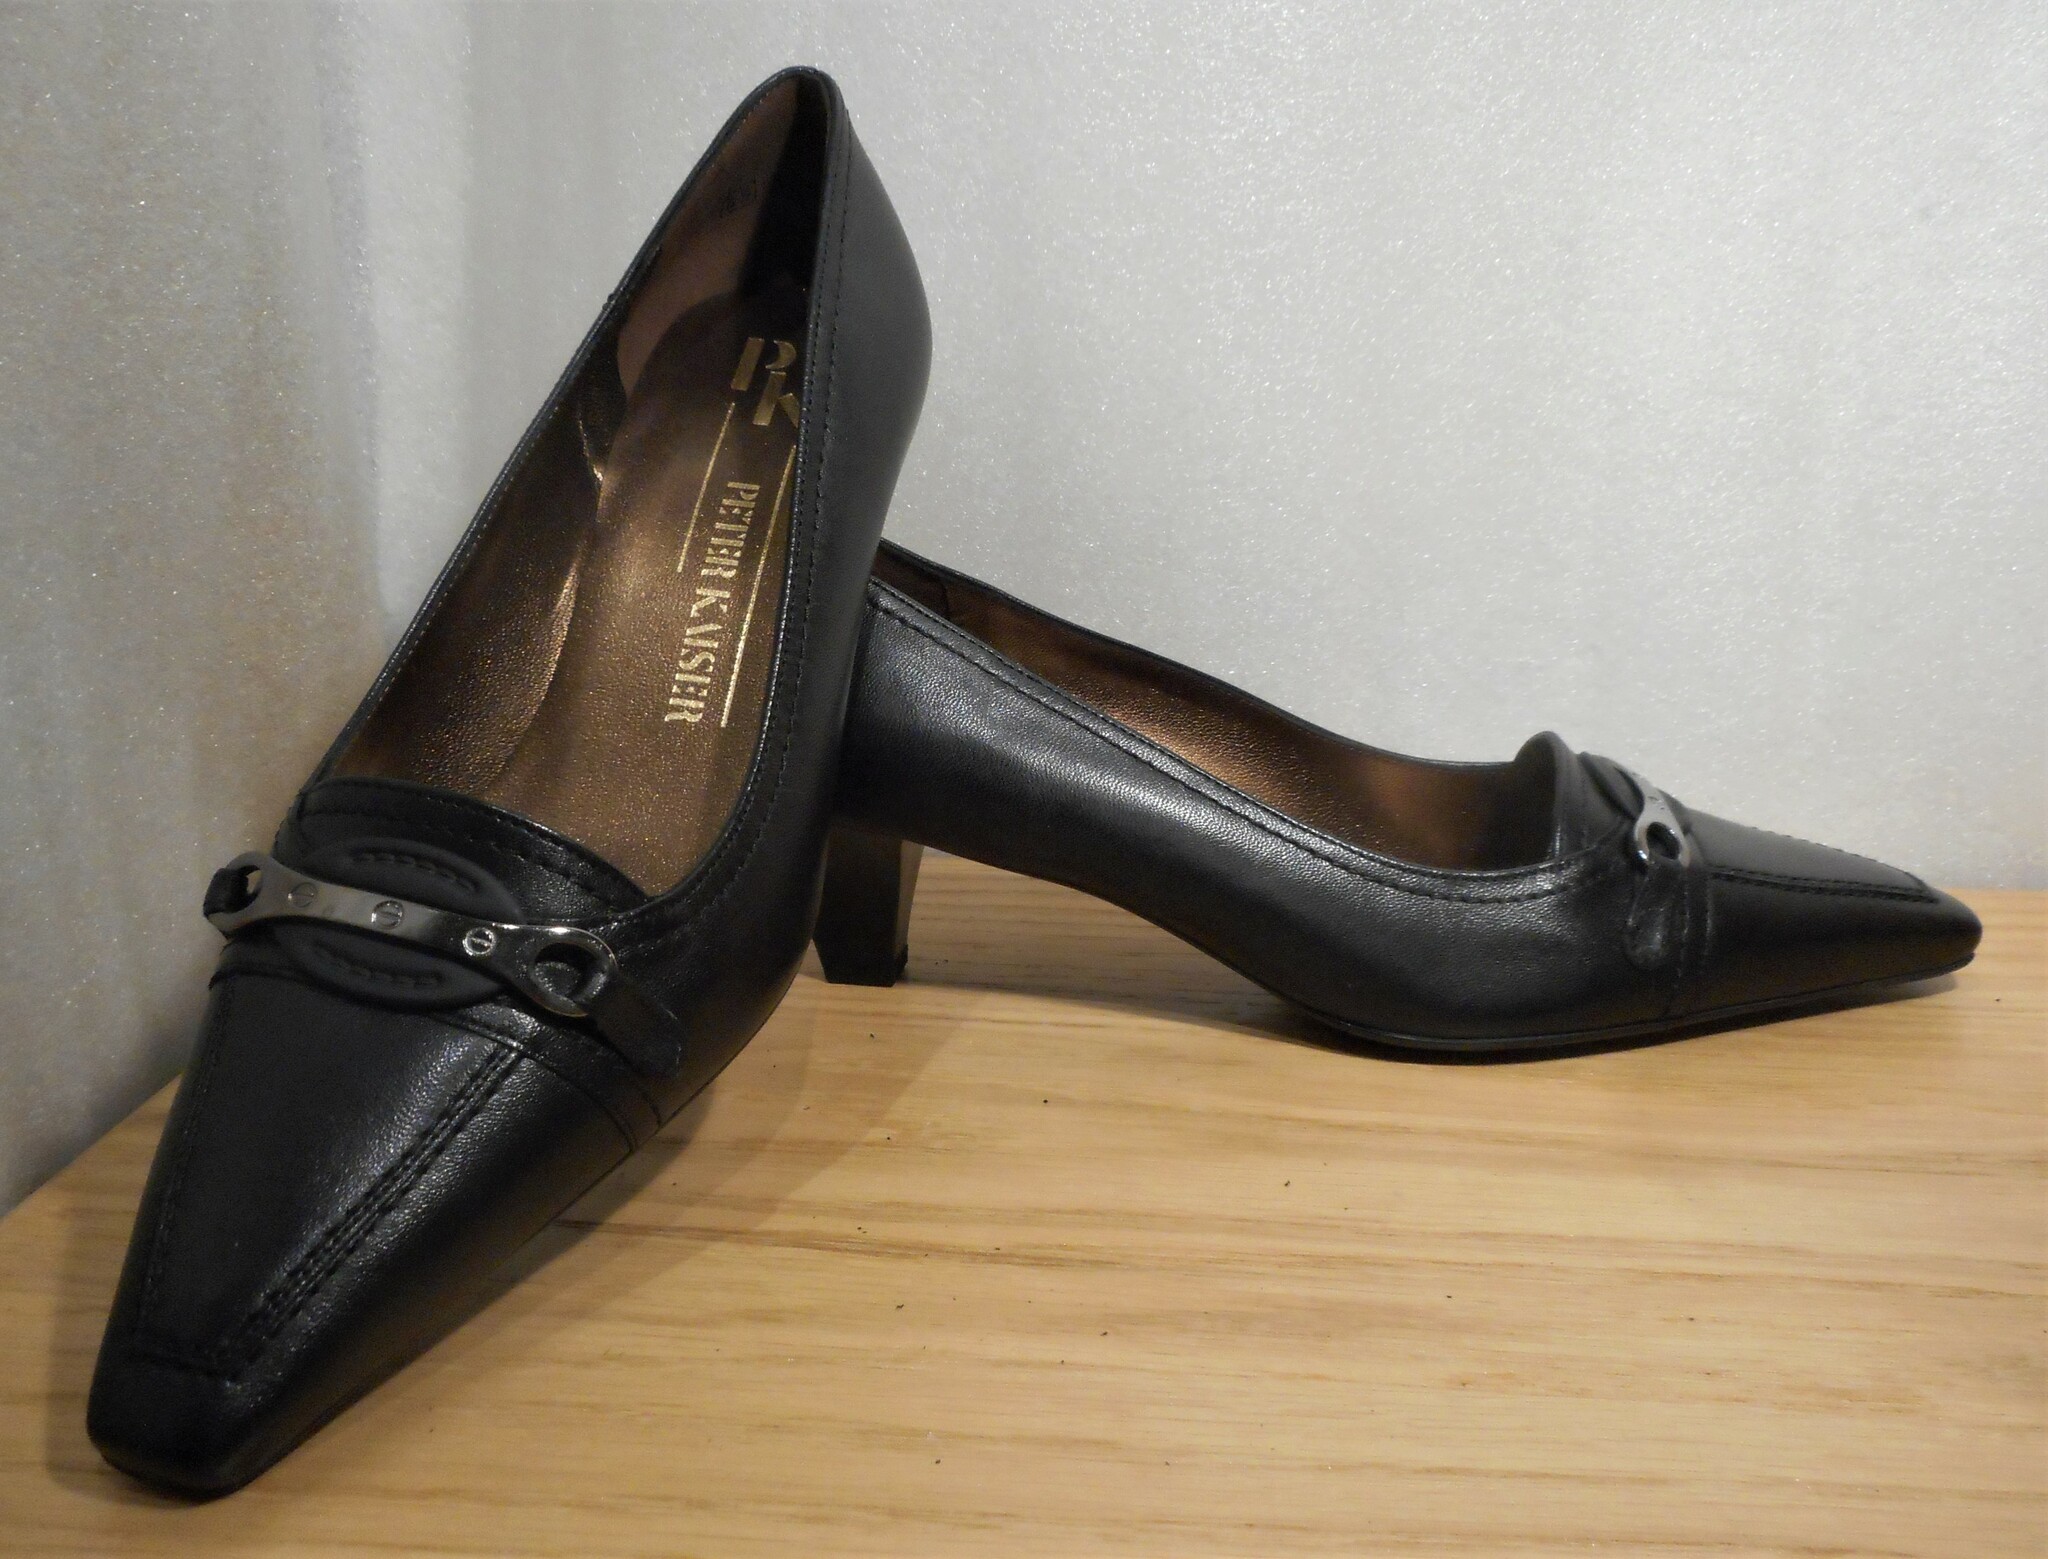 Svart loafer på klack, med liten silverlänk - fabrikat Peter Kaiser